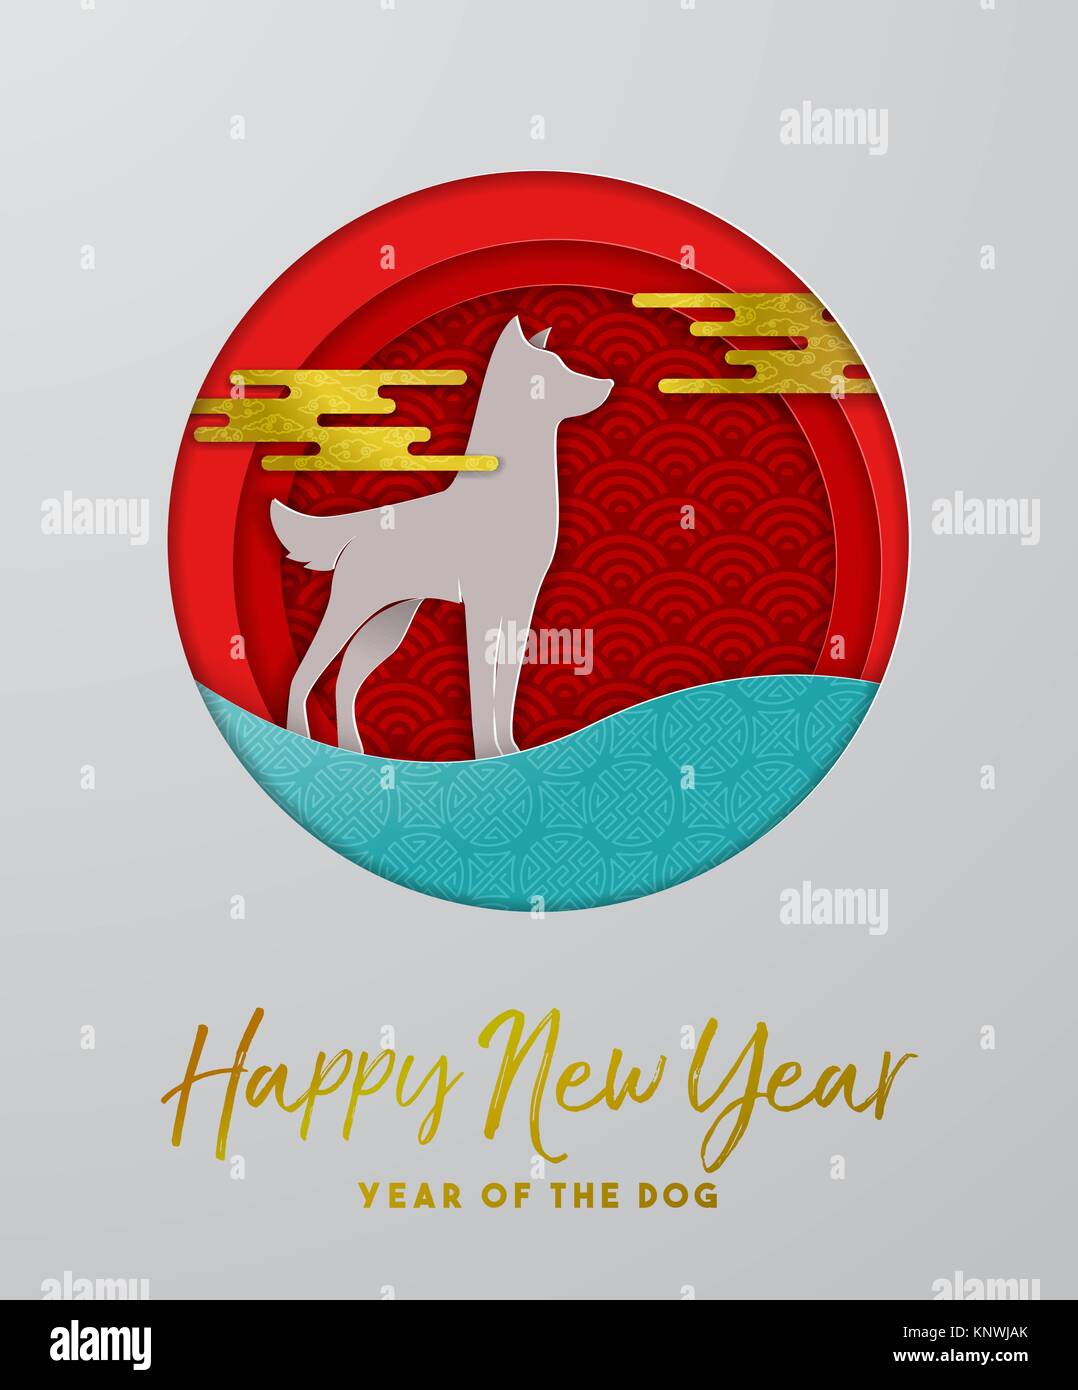 Happy Chinese New Year 2018 Grußkarte ausschnitt Illustration, modernen  Stil hund Scherenschnitt Kunst mit traditionellen asiatischen Dekoration in  Gold Farbe. EPS 10v Stock-Vektorgrafik - Alamy